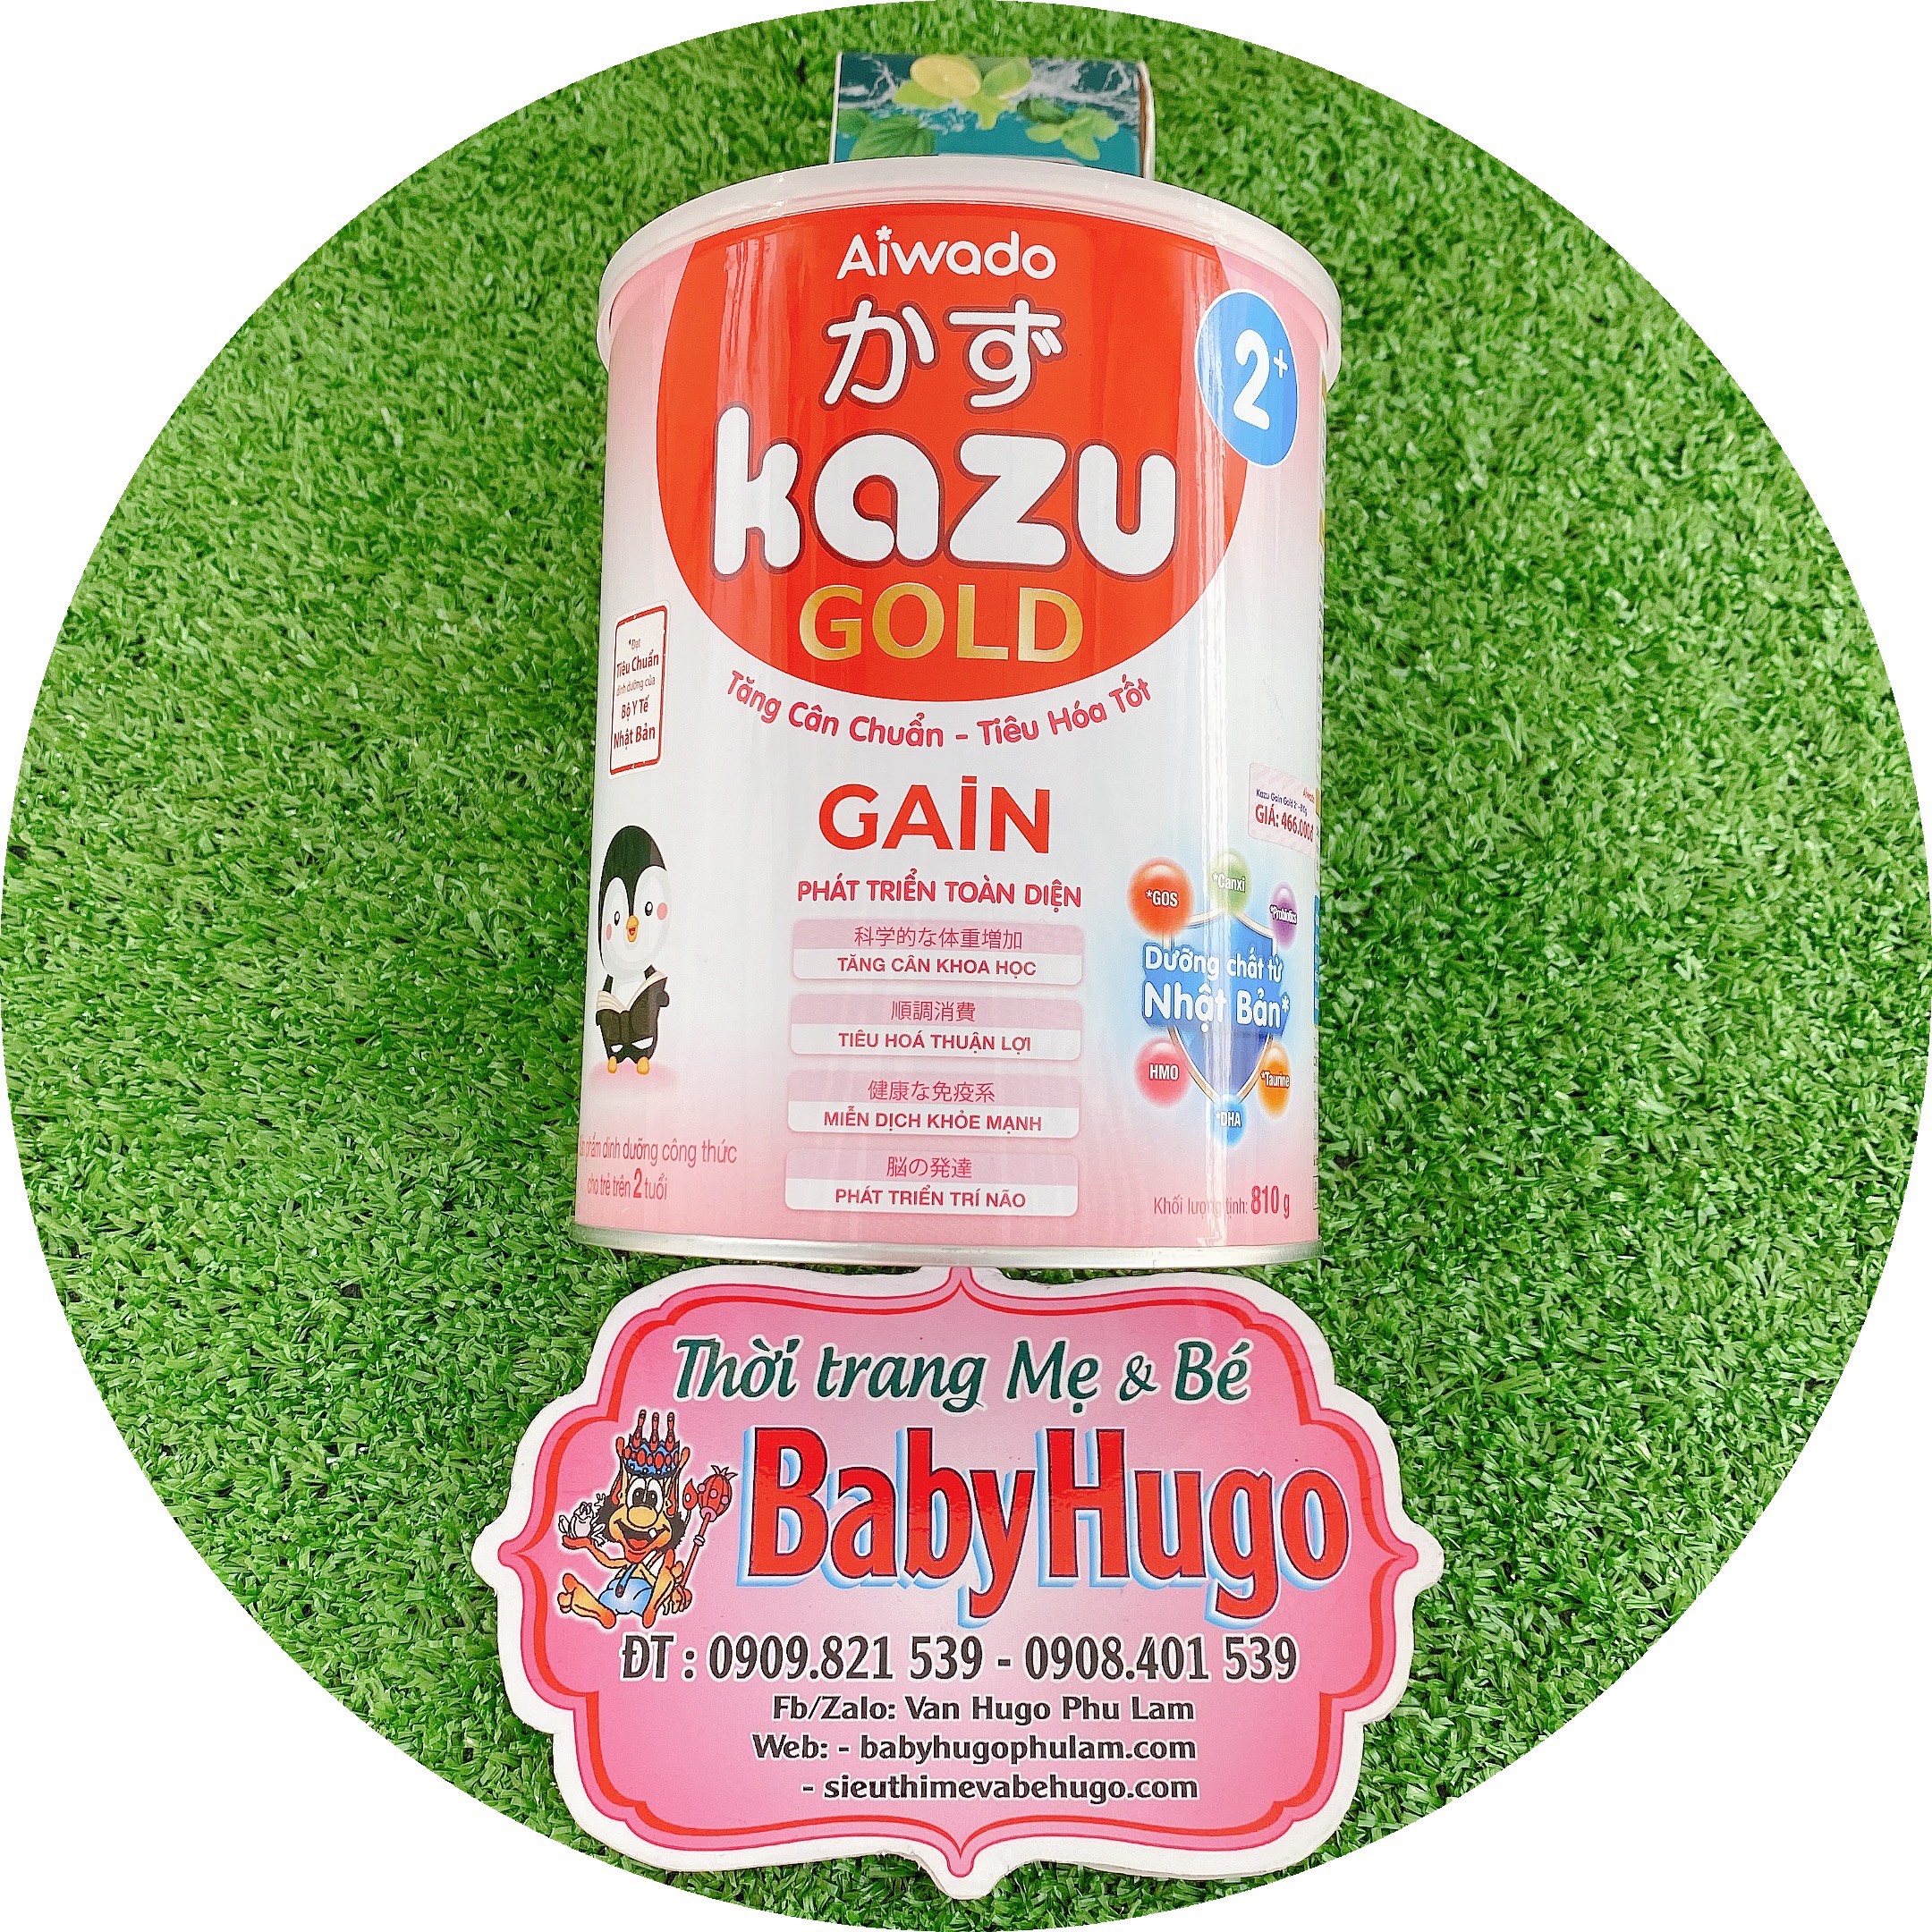 [TĂNG CÂN-TIÊU HOÁ TỐT] - Sữa bột KAZU GAIN 2+ 810g